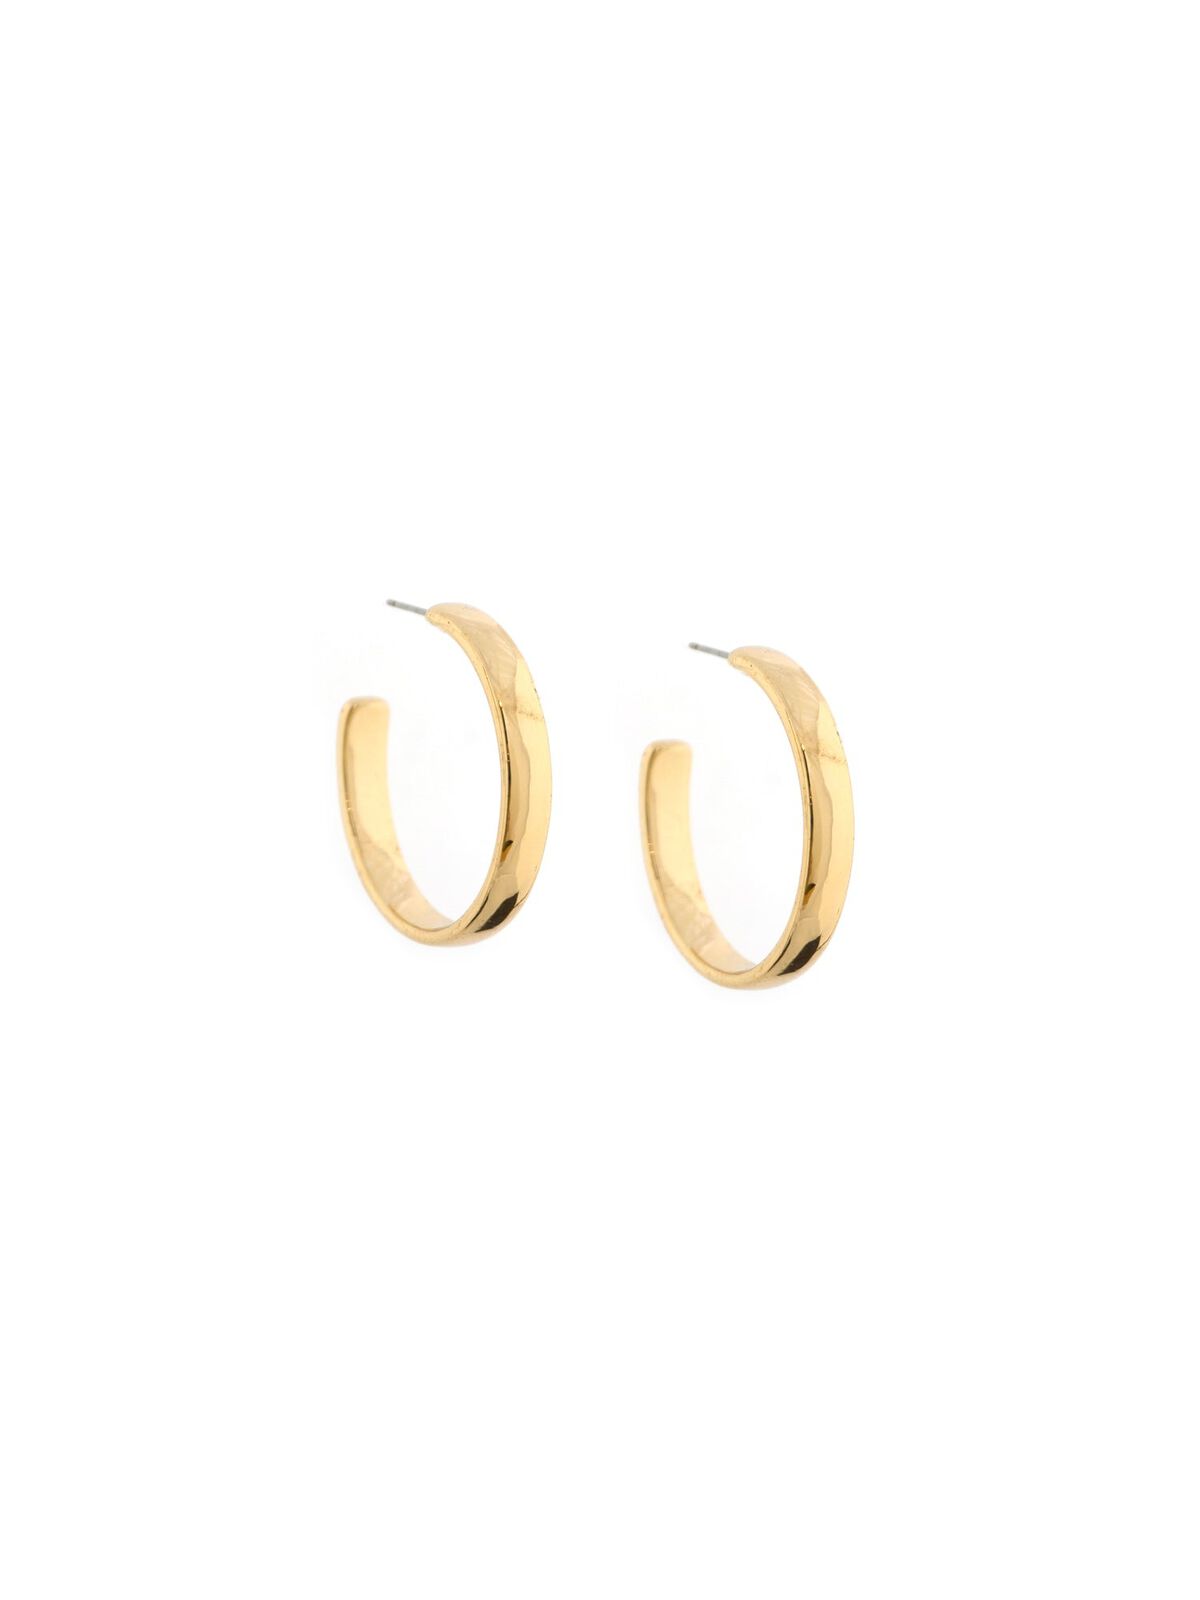 Marlyn Schiff Hoop Earrings